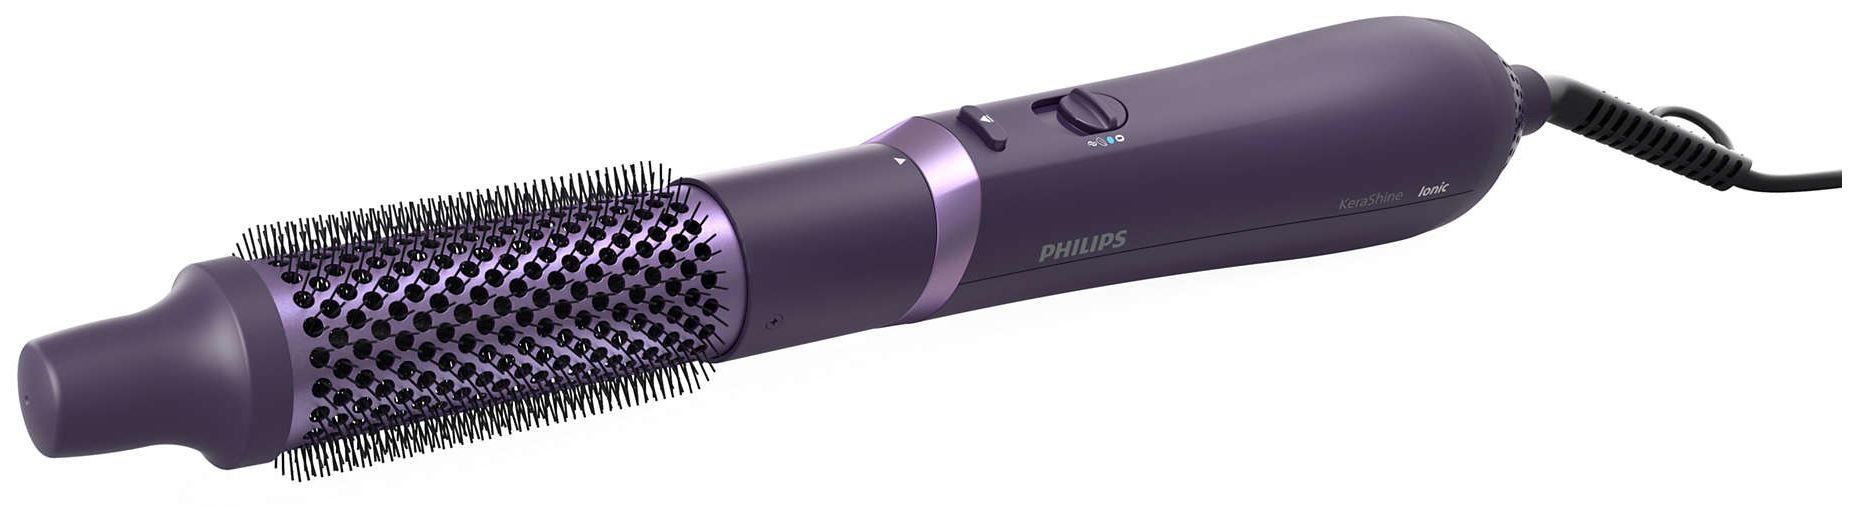 Multistyler 800 (Violett) Technomarkt series von expert 3000 W Philips BHA305/00